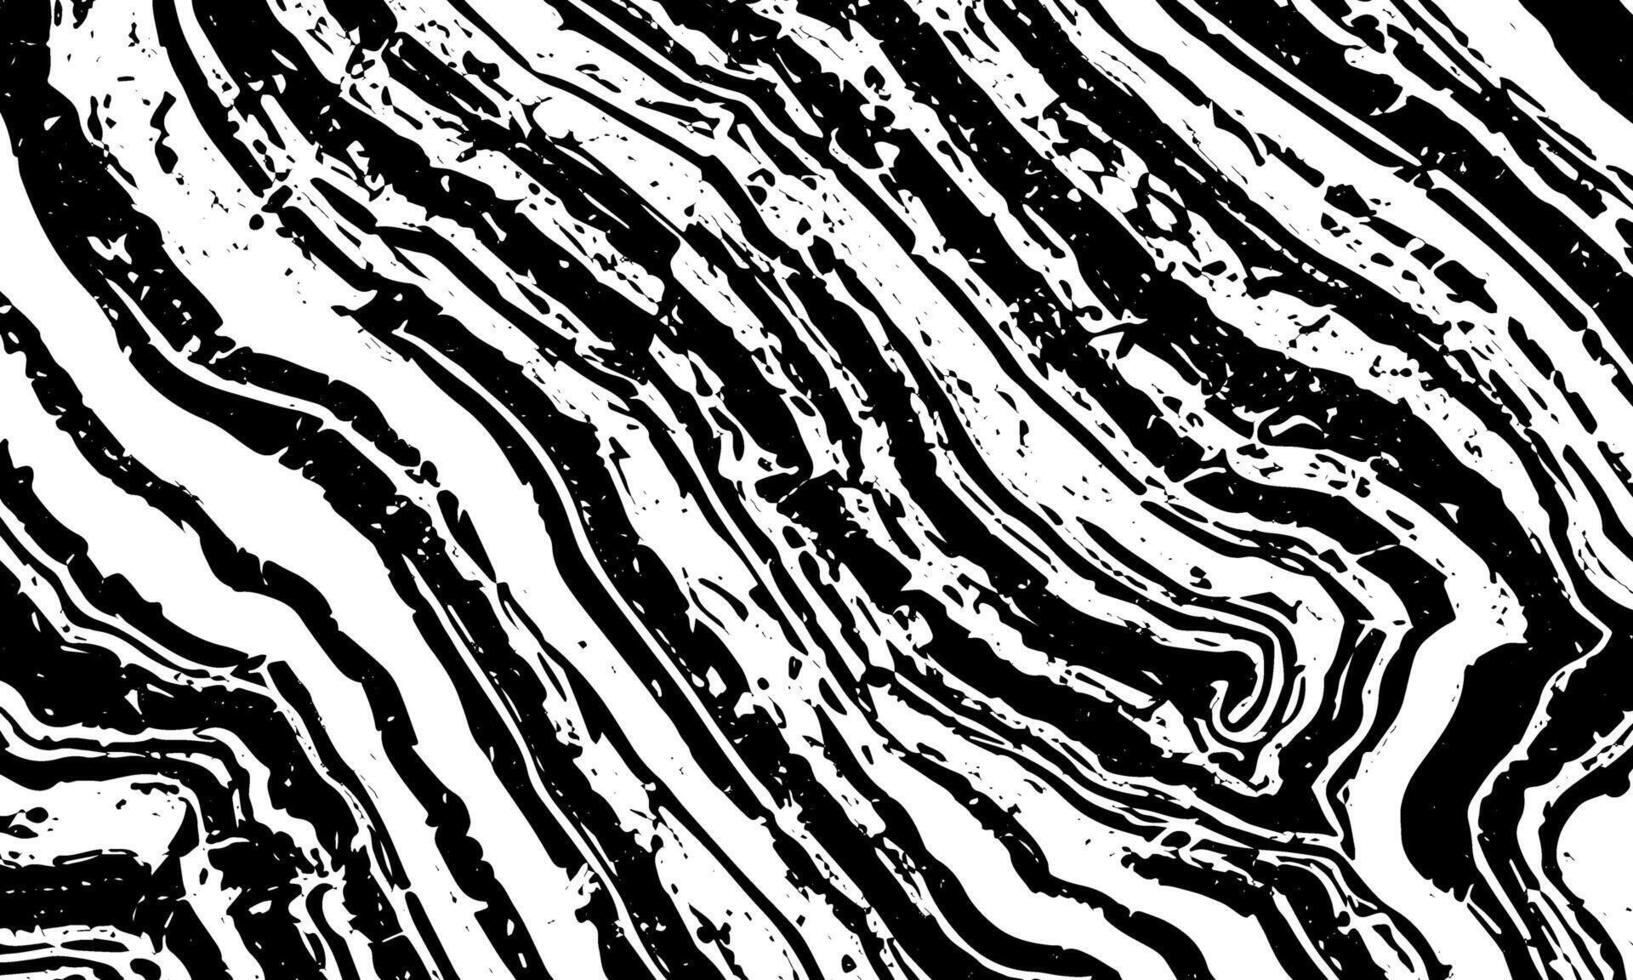 grunge gedetailleerd zwart abstract textuur. vector